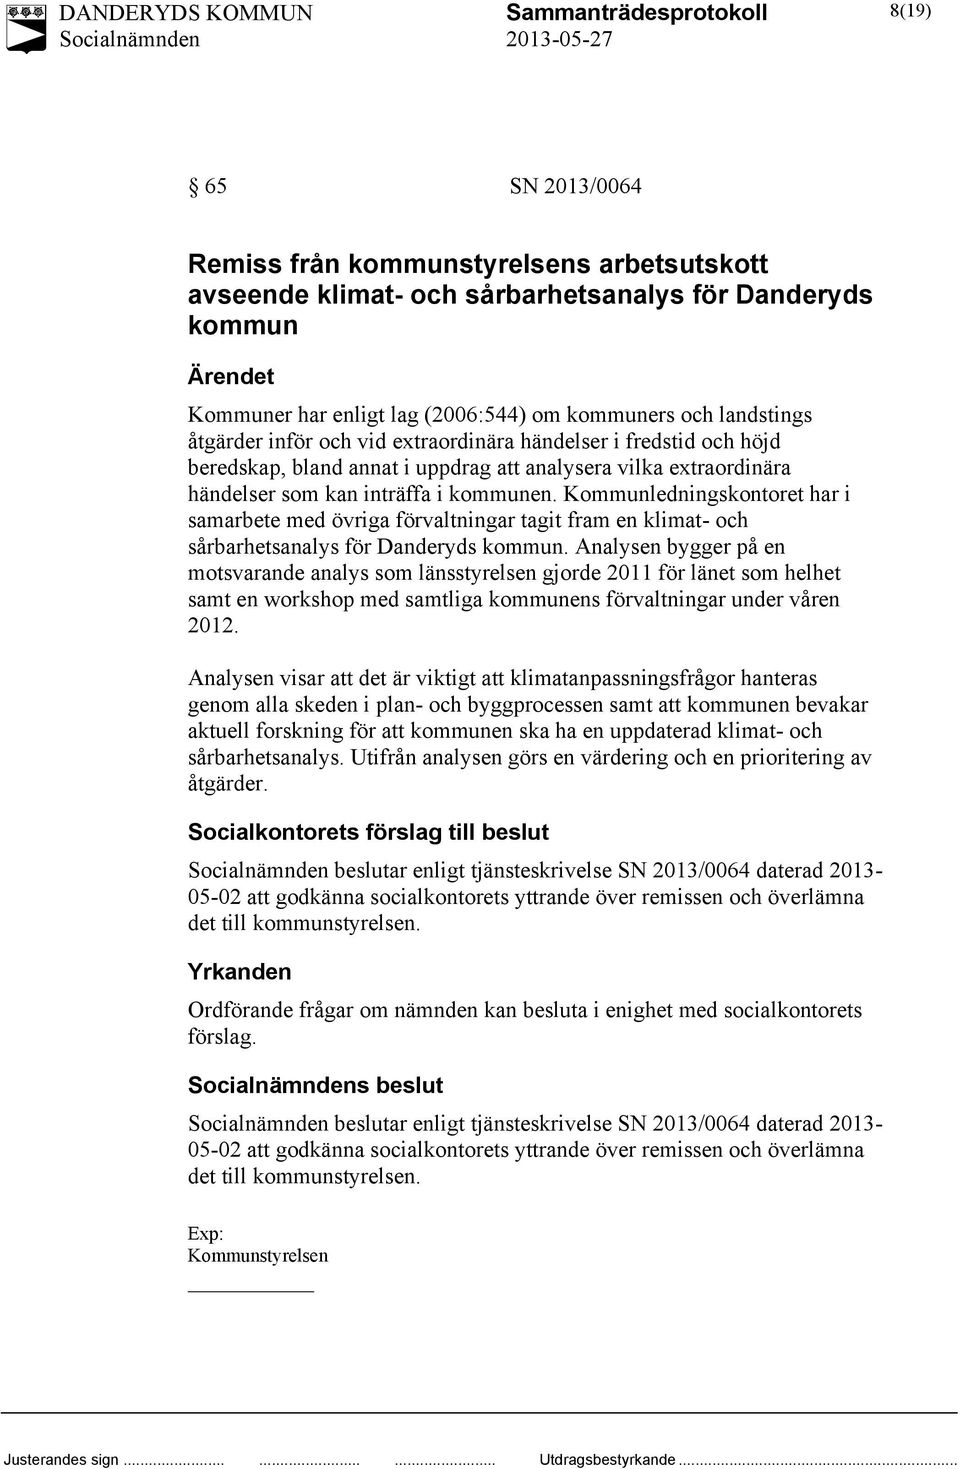 Kommunledningskontoret har i samarbete med övriga förvaltningar tagit fram en klimat- och sårbarhetsanalys för Danderyds kommun.